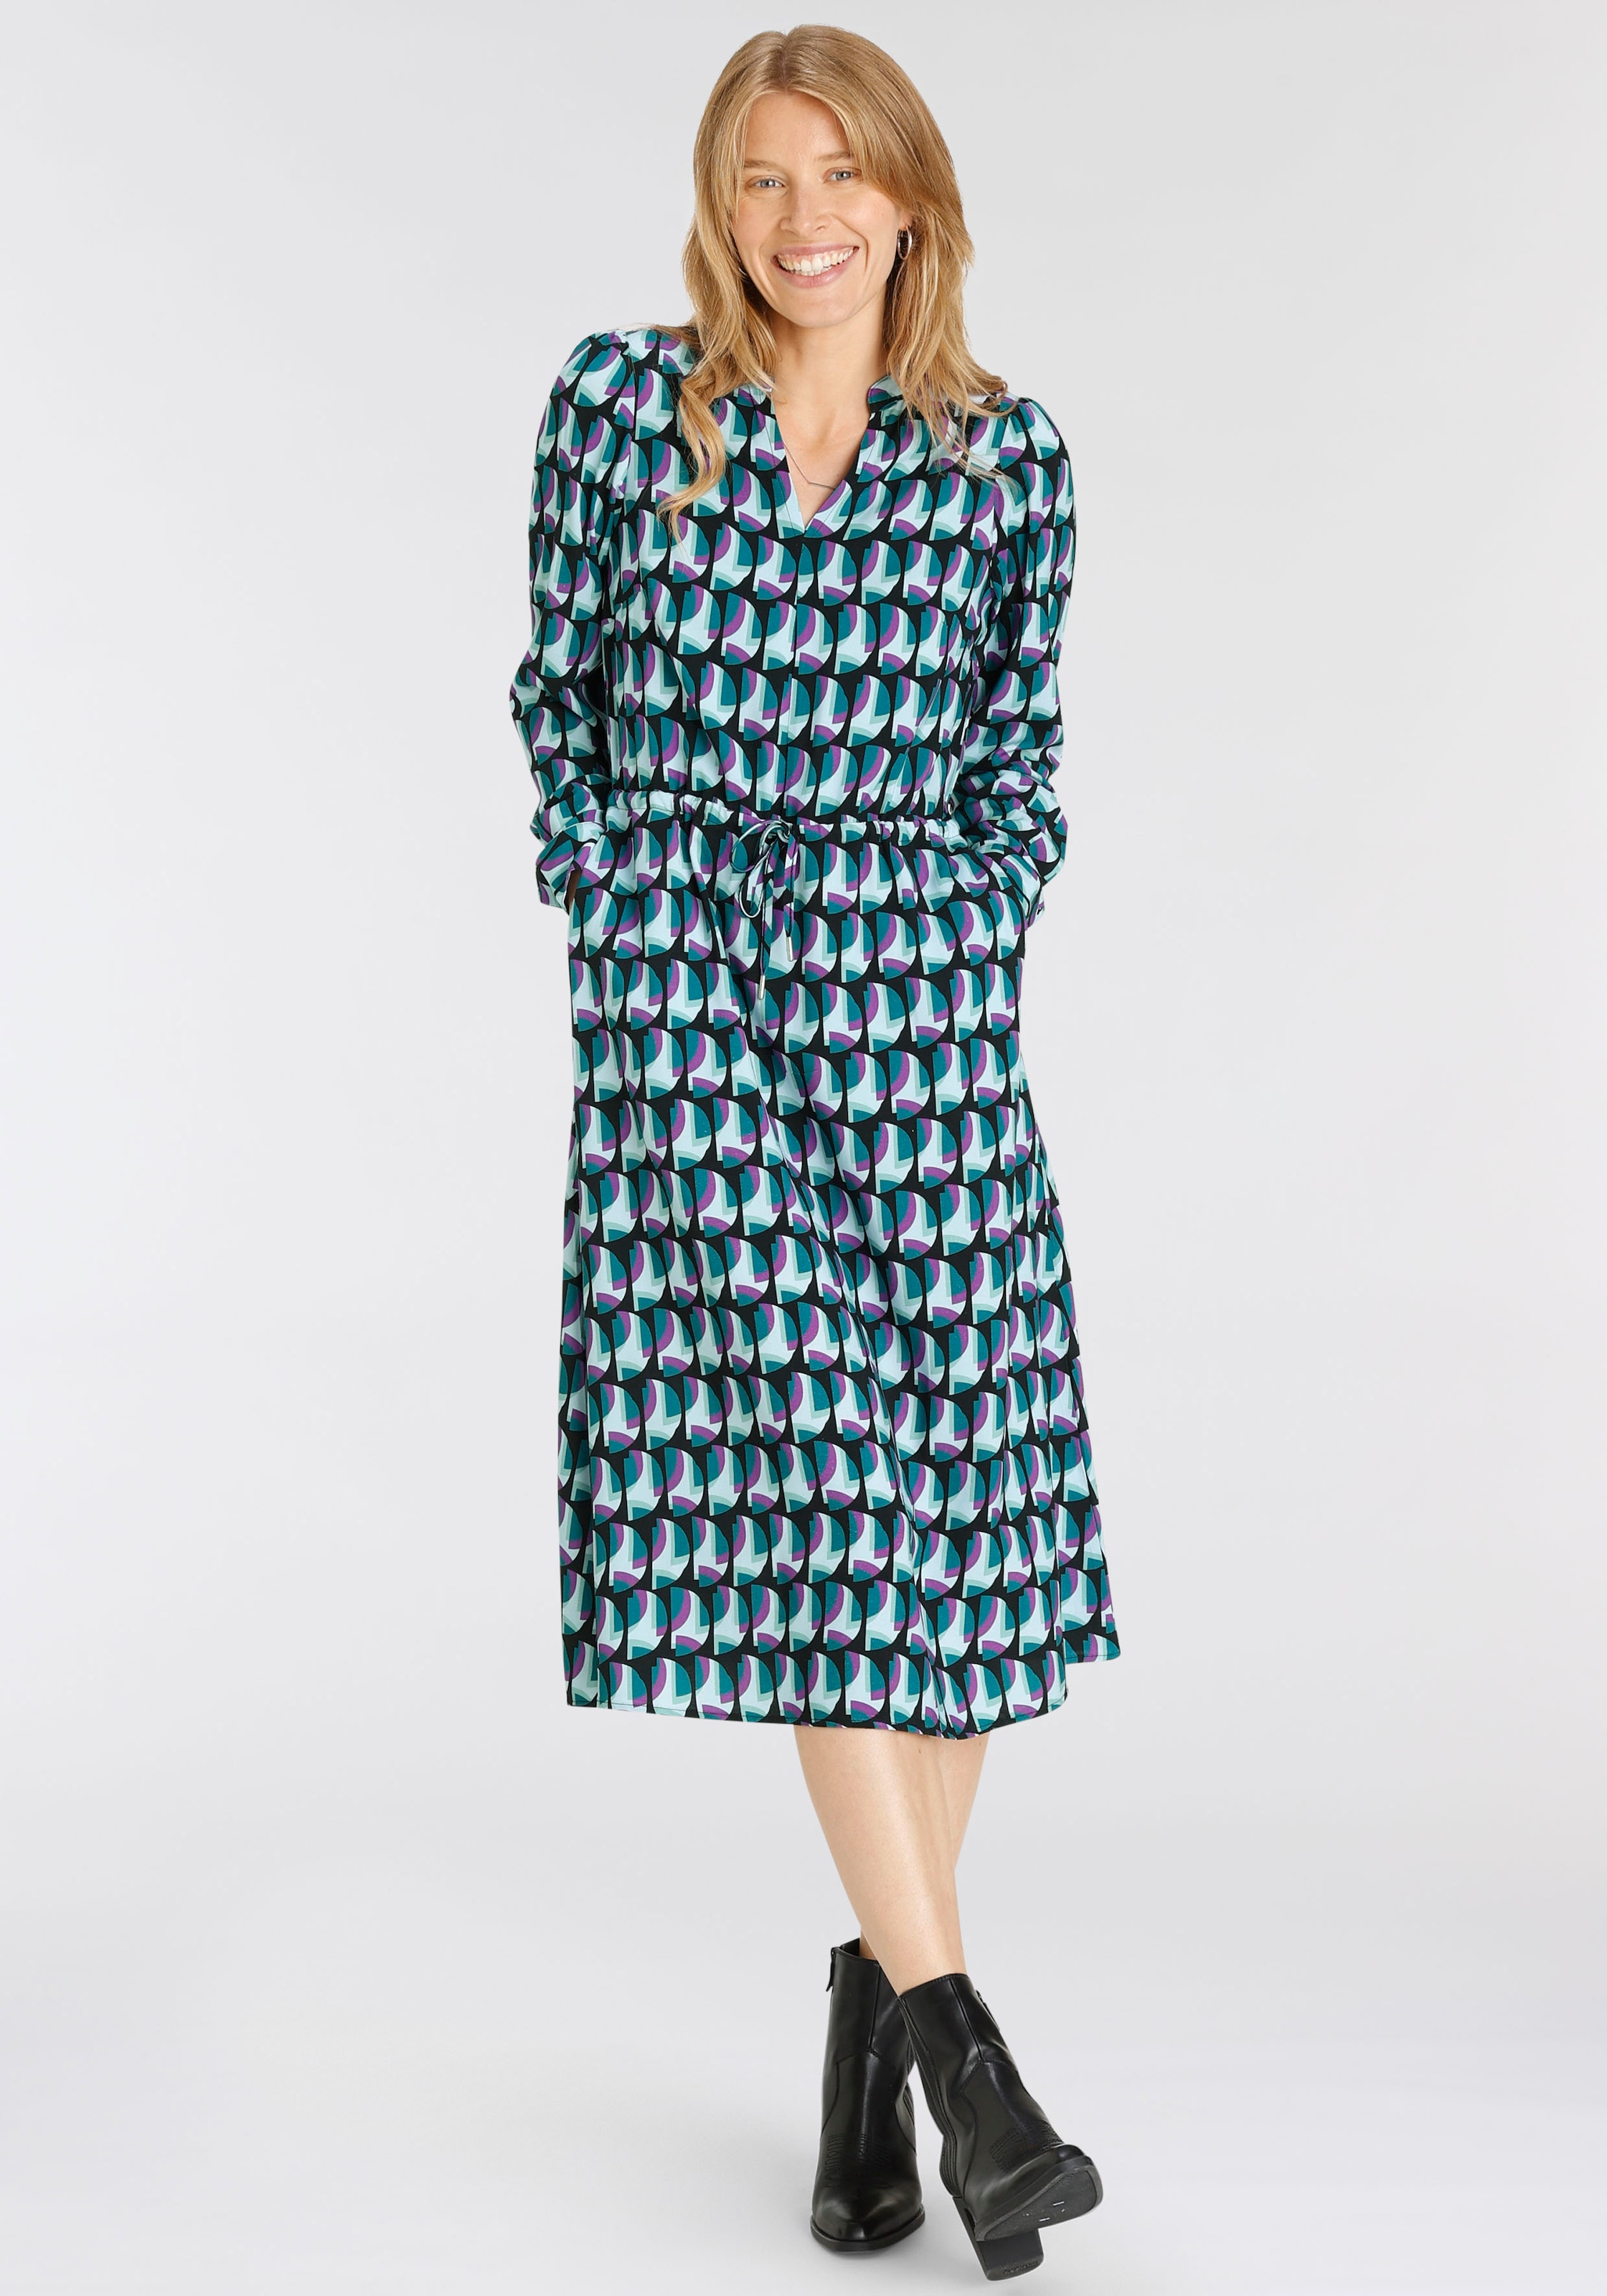 HECHTER PARIS Hemdblusenkleid, mit elegantem Allover-Print kaufen bei OTTO